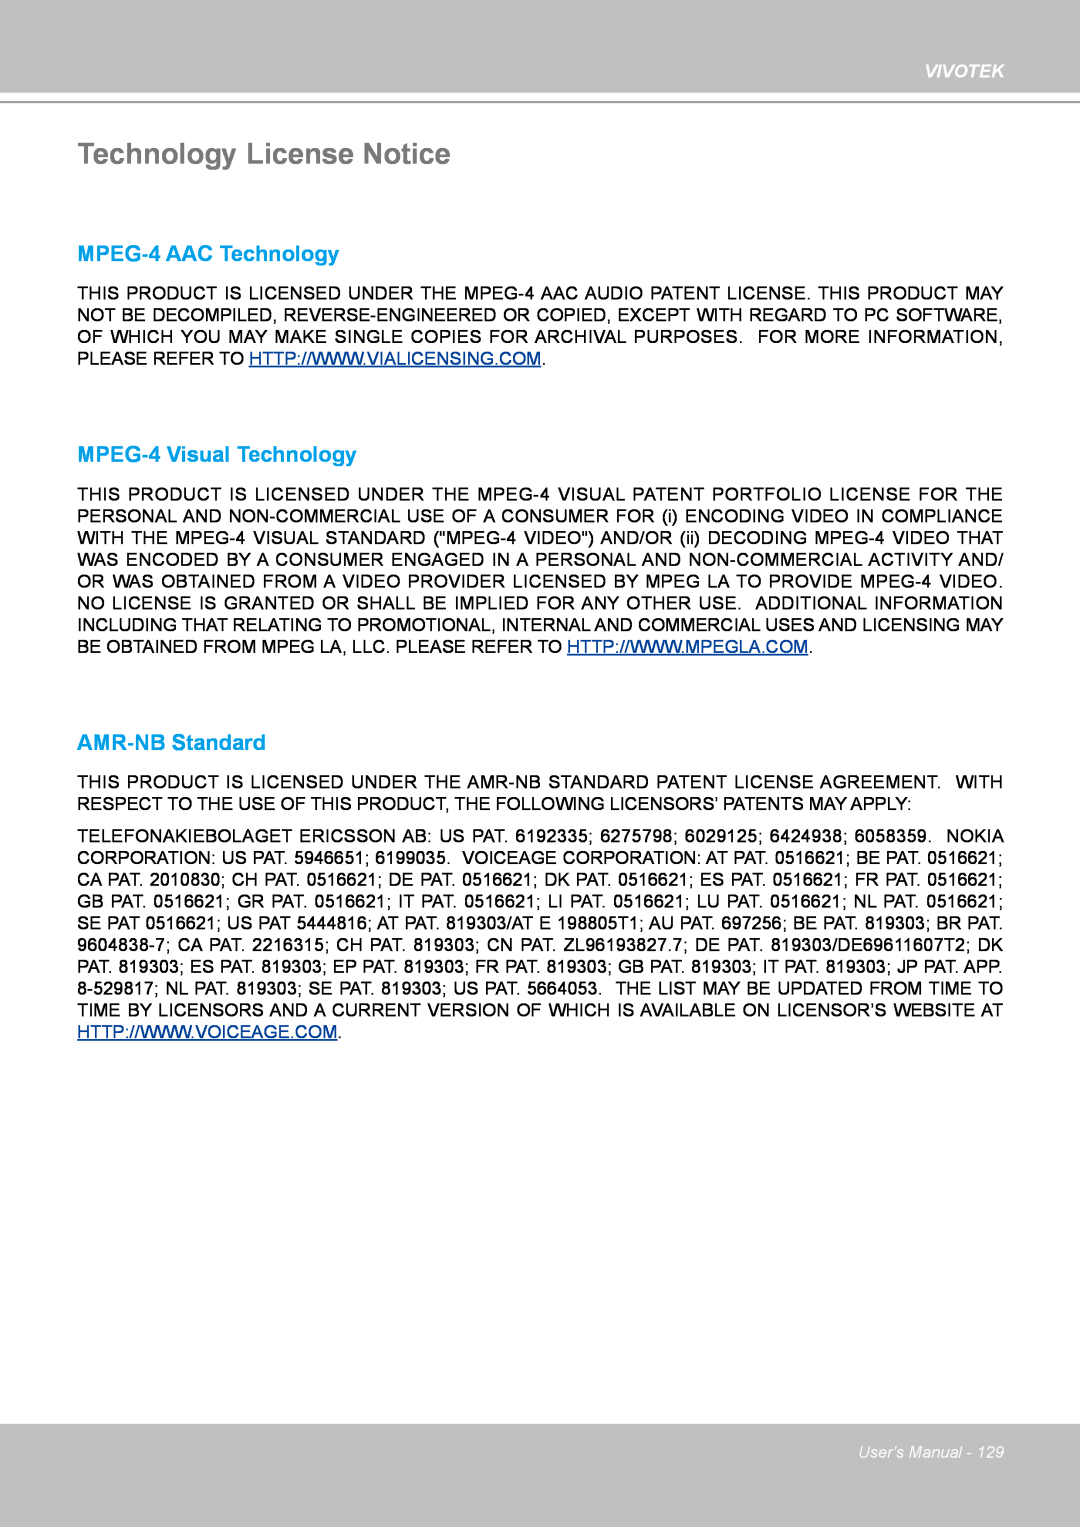 Vivotek PZ7132 manual Technology License Notice, MPEG-4 AAC Technology, MPEG-4 Visual Technology, AMR-NB Standard, Vivotek 